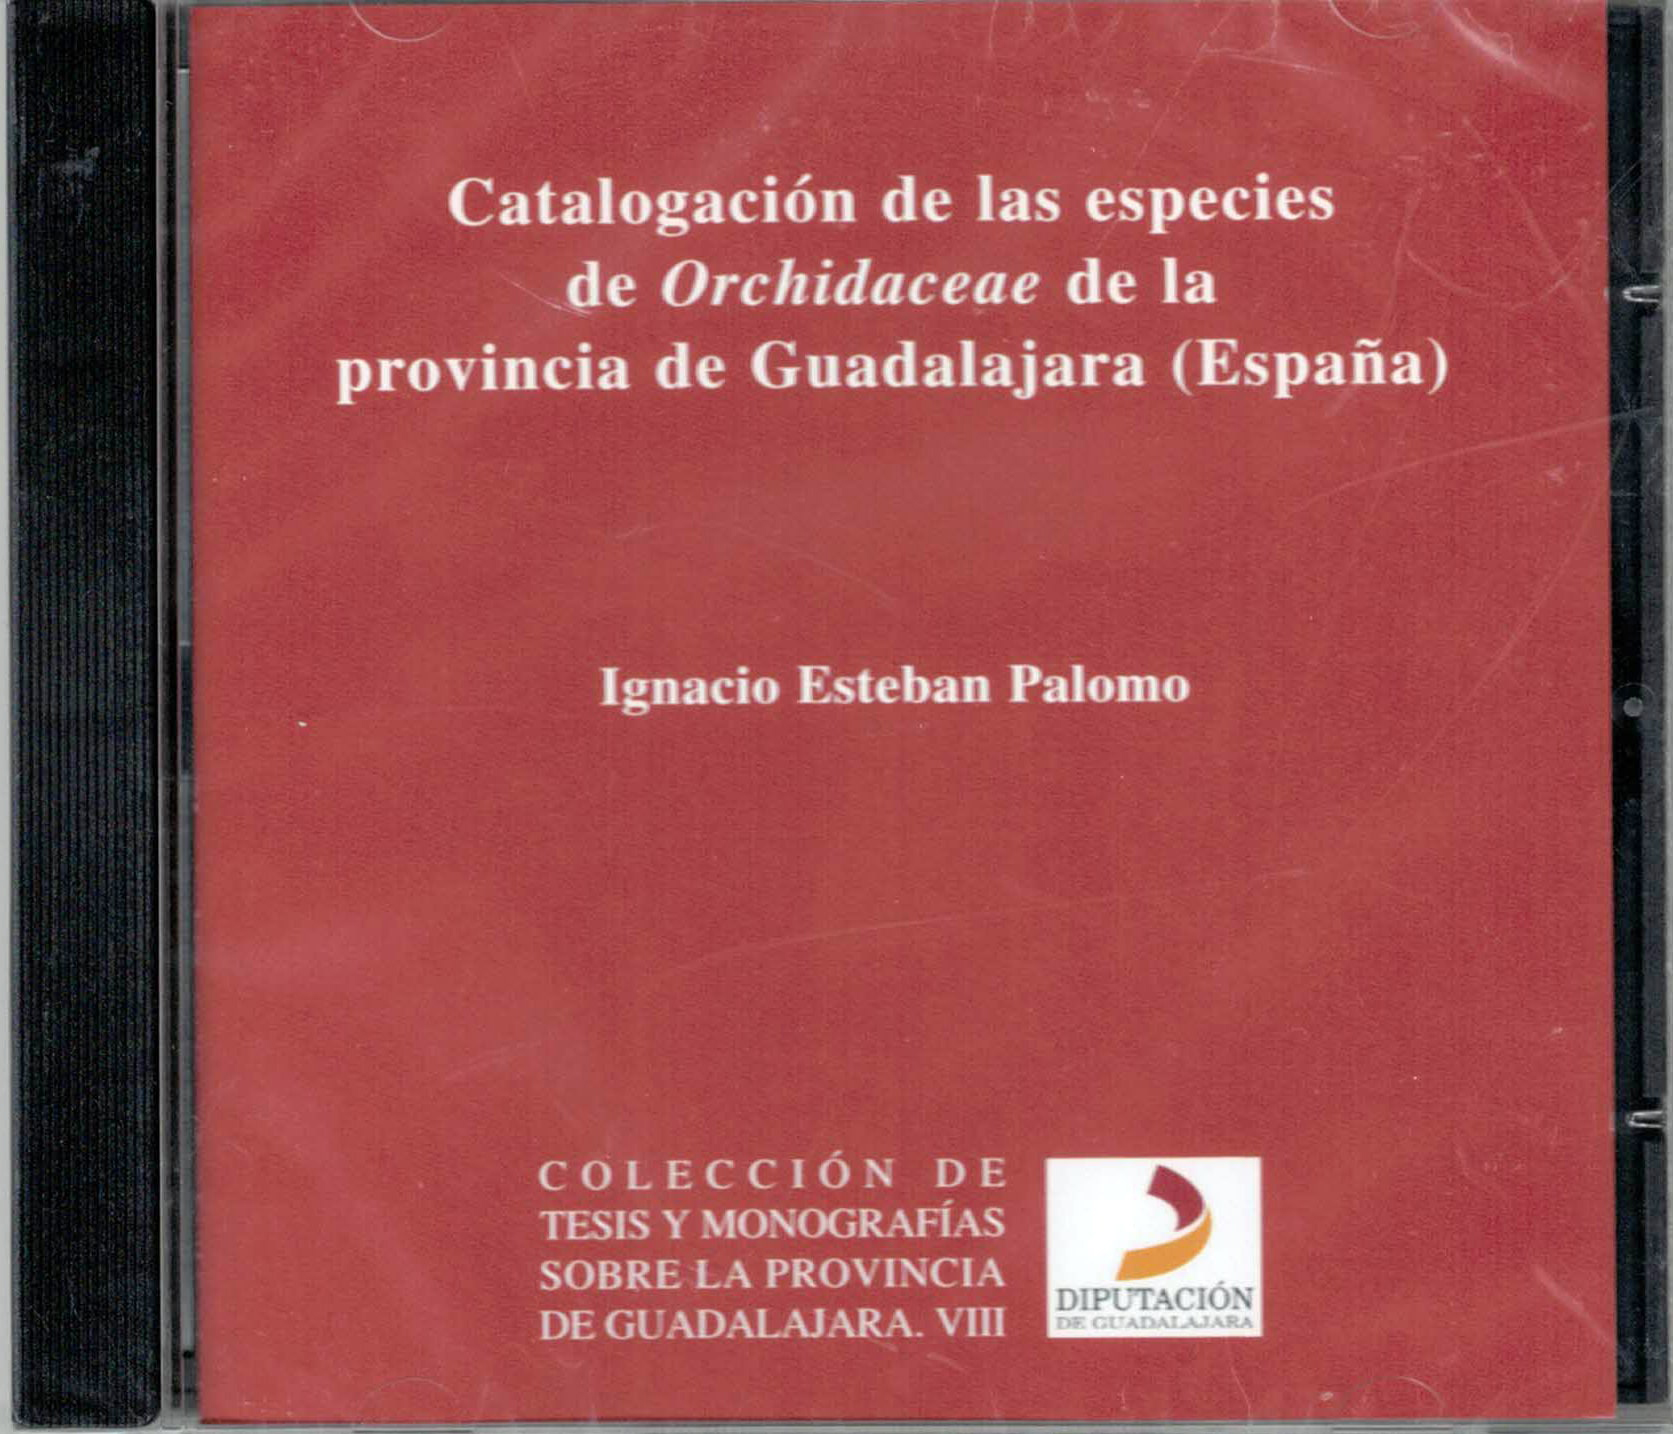 Catalogacion de las especies de Orchidaceae de la provincia de Guadalajara